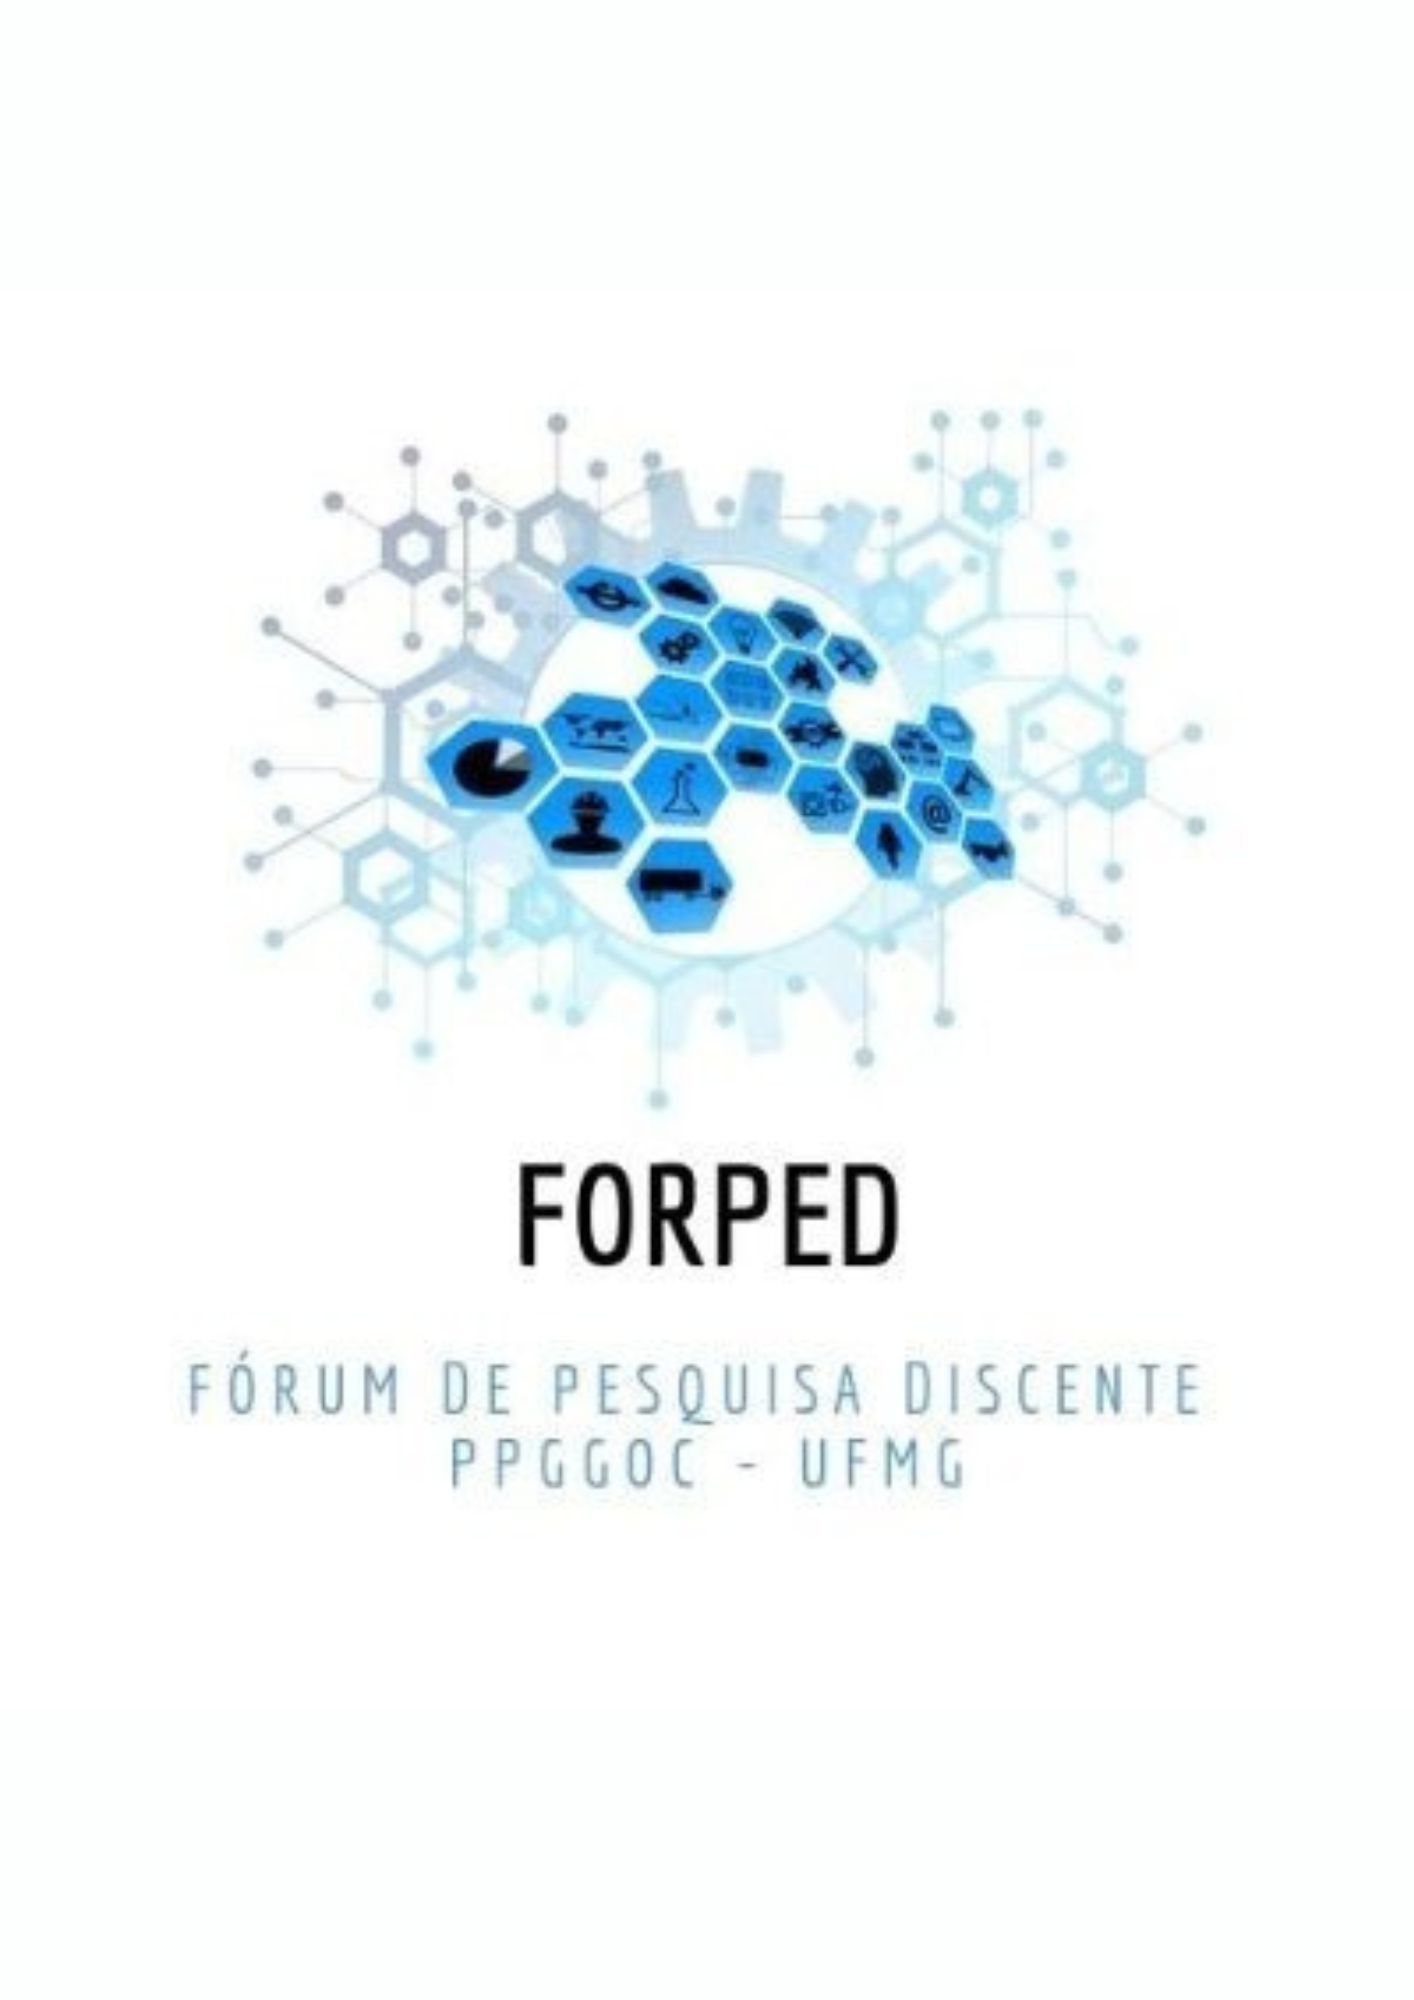 					Visualizar III Fórum de Pesquisas Discentes (FORPED-PPGGOC - 2021)
				